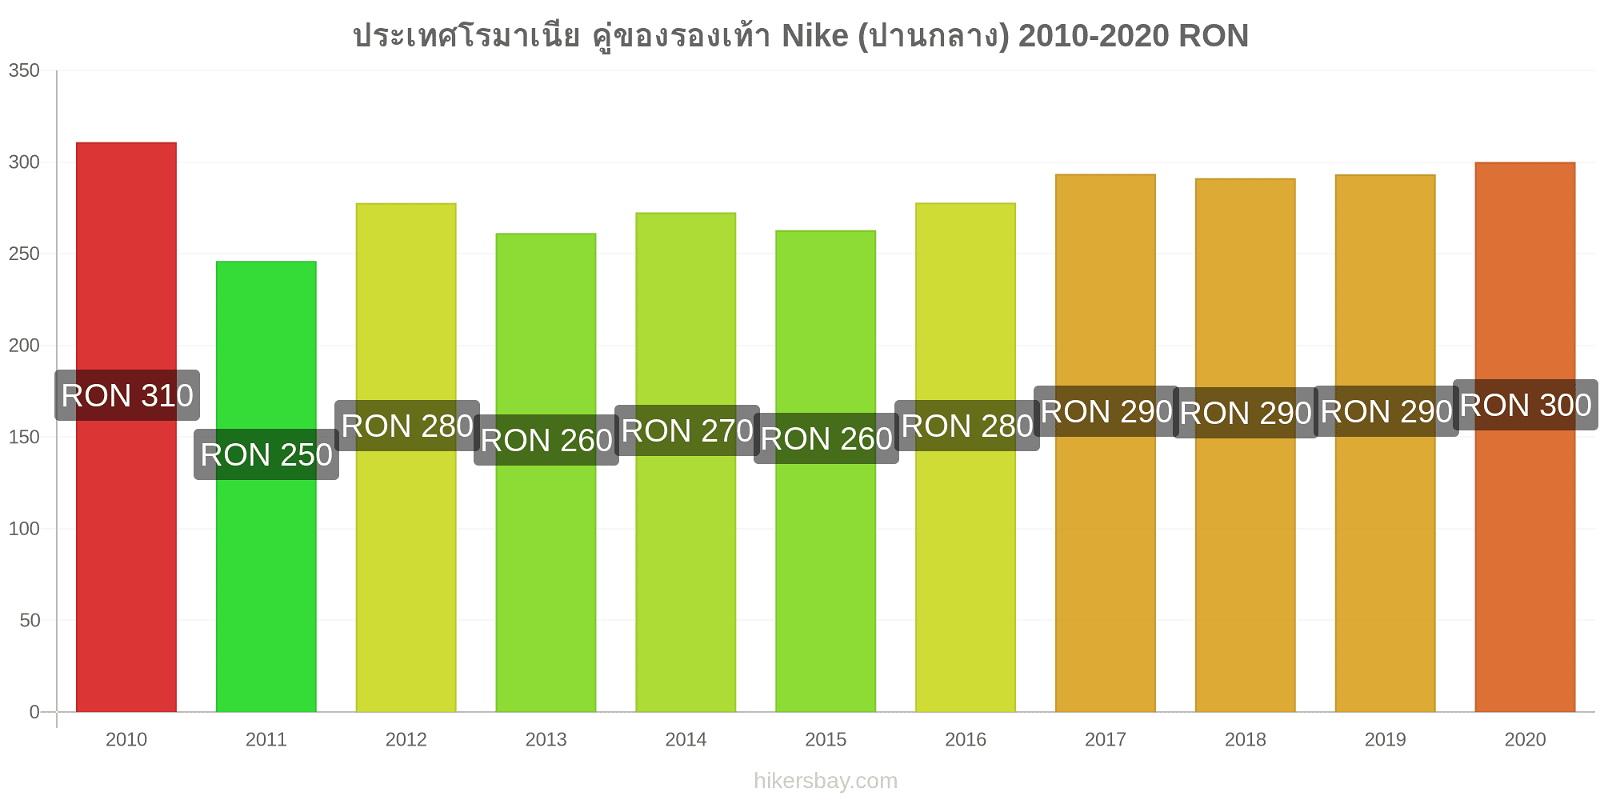 ประเทศโรมาเนีย การเปลี่ยนแปลงราคา คู่ของรองเท้า Nike (ปานกลาง) hikersbay.com